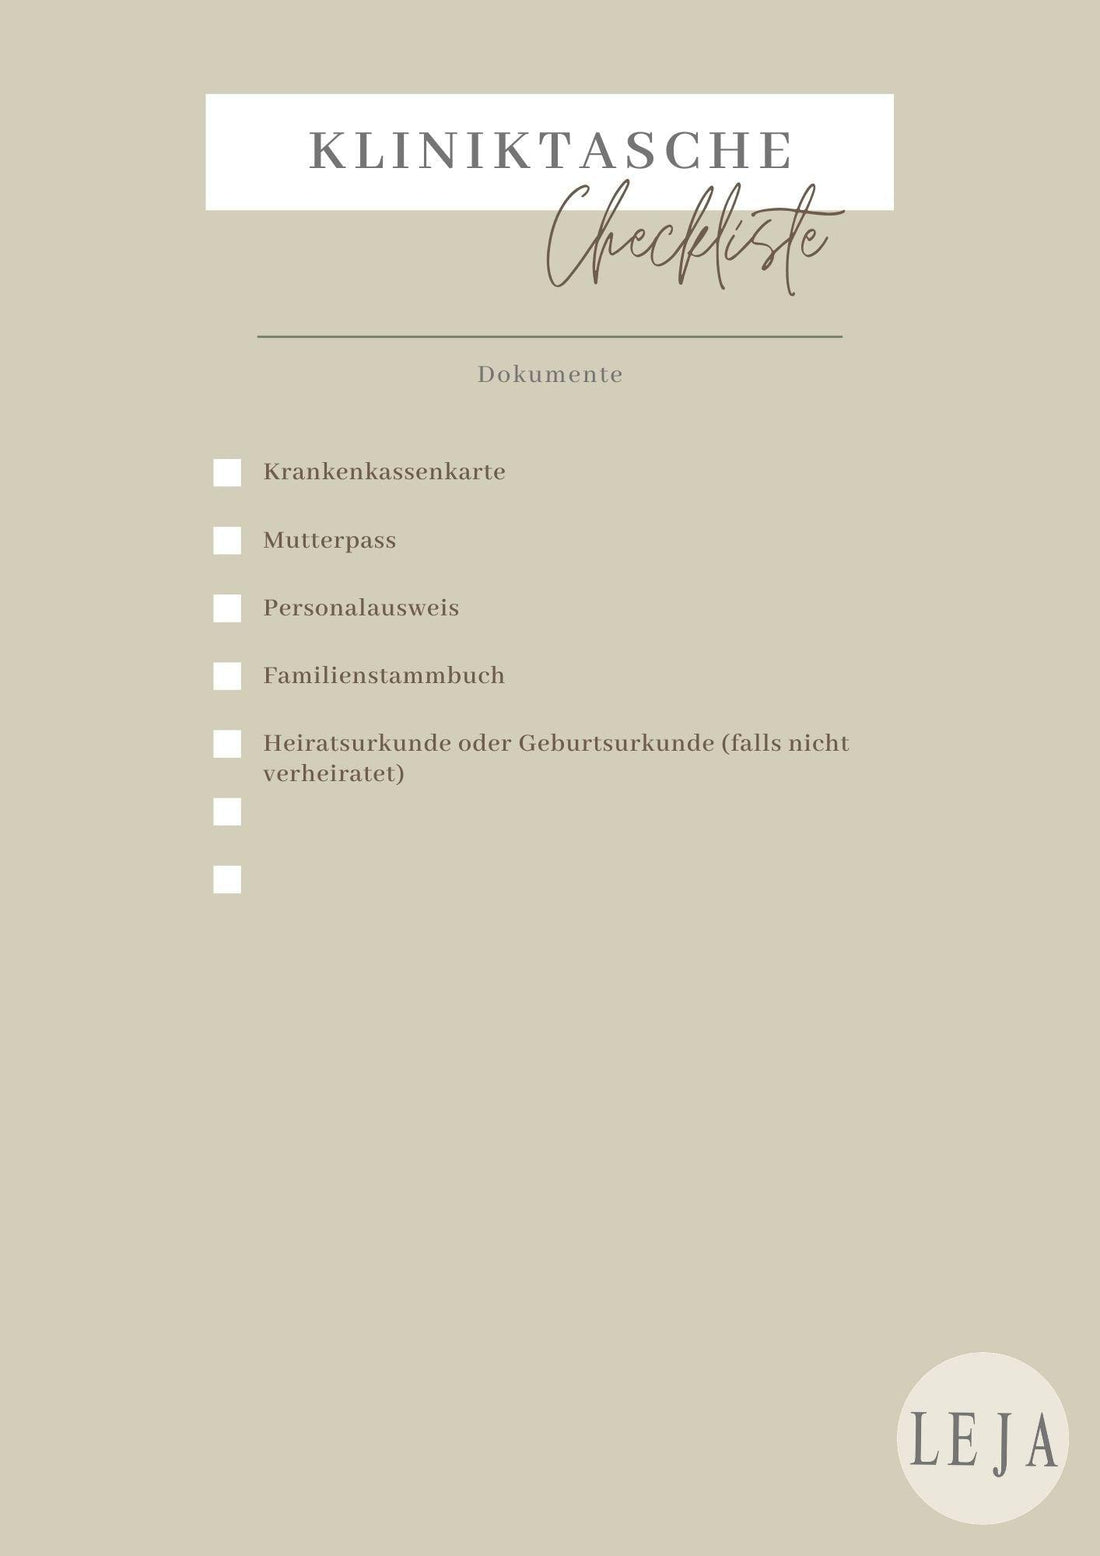 Kliniktasche packen - Checkliste - Leja Concept Store